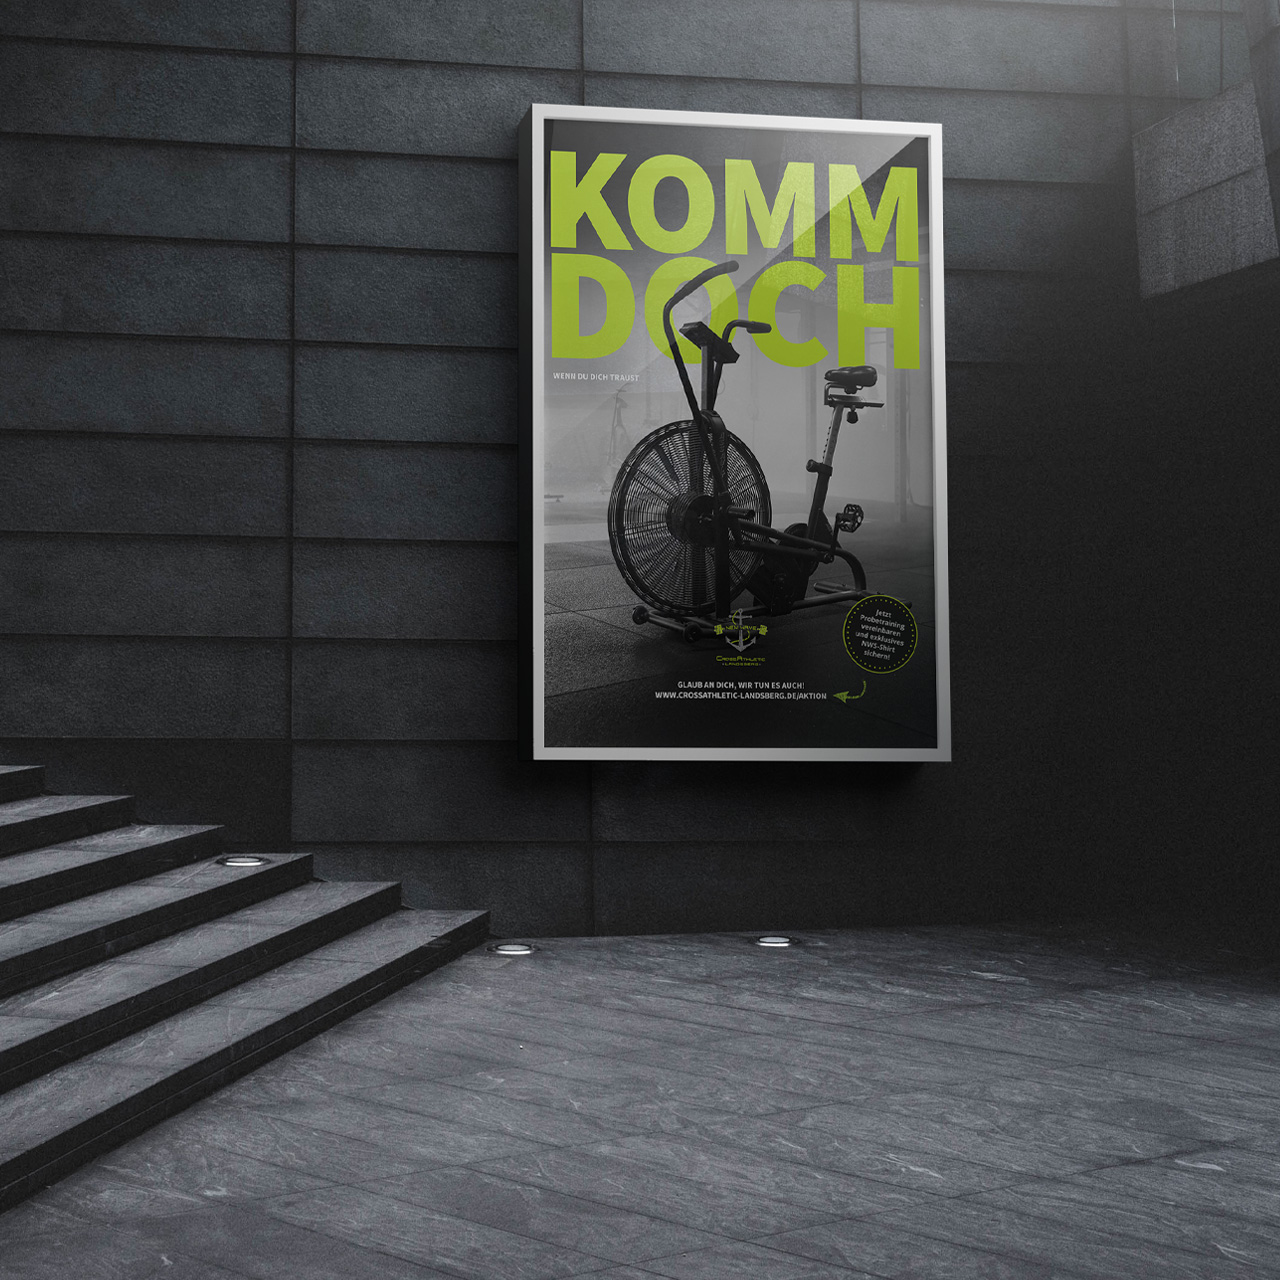 Mockup eines Plakats, auf welchem ein Crossfit Aussaultbike mit der Aufschrift: Komm doch, wenn du dich traust, zu sehen ist.